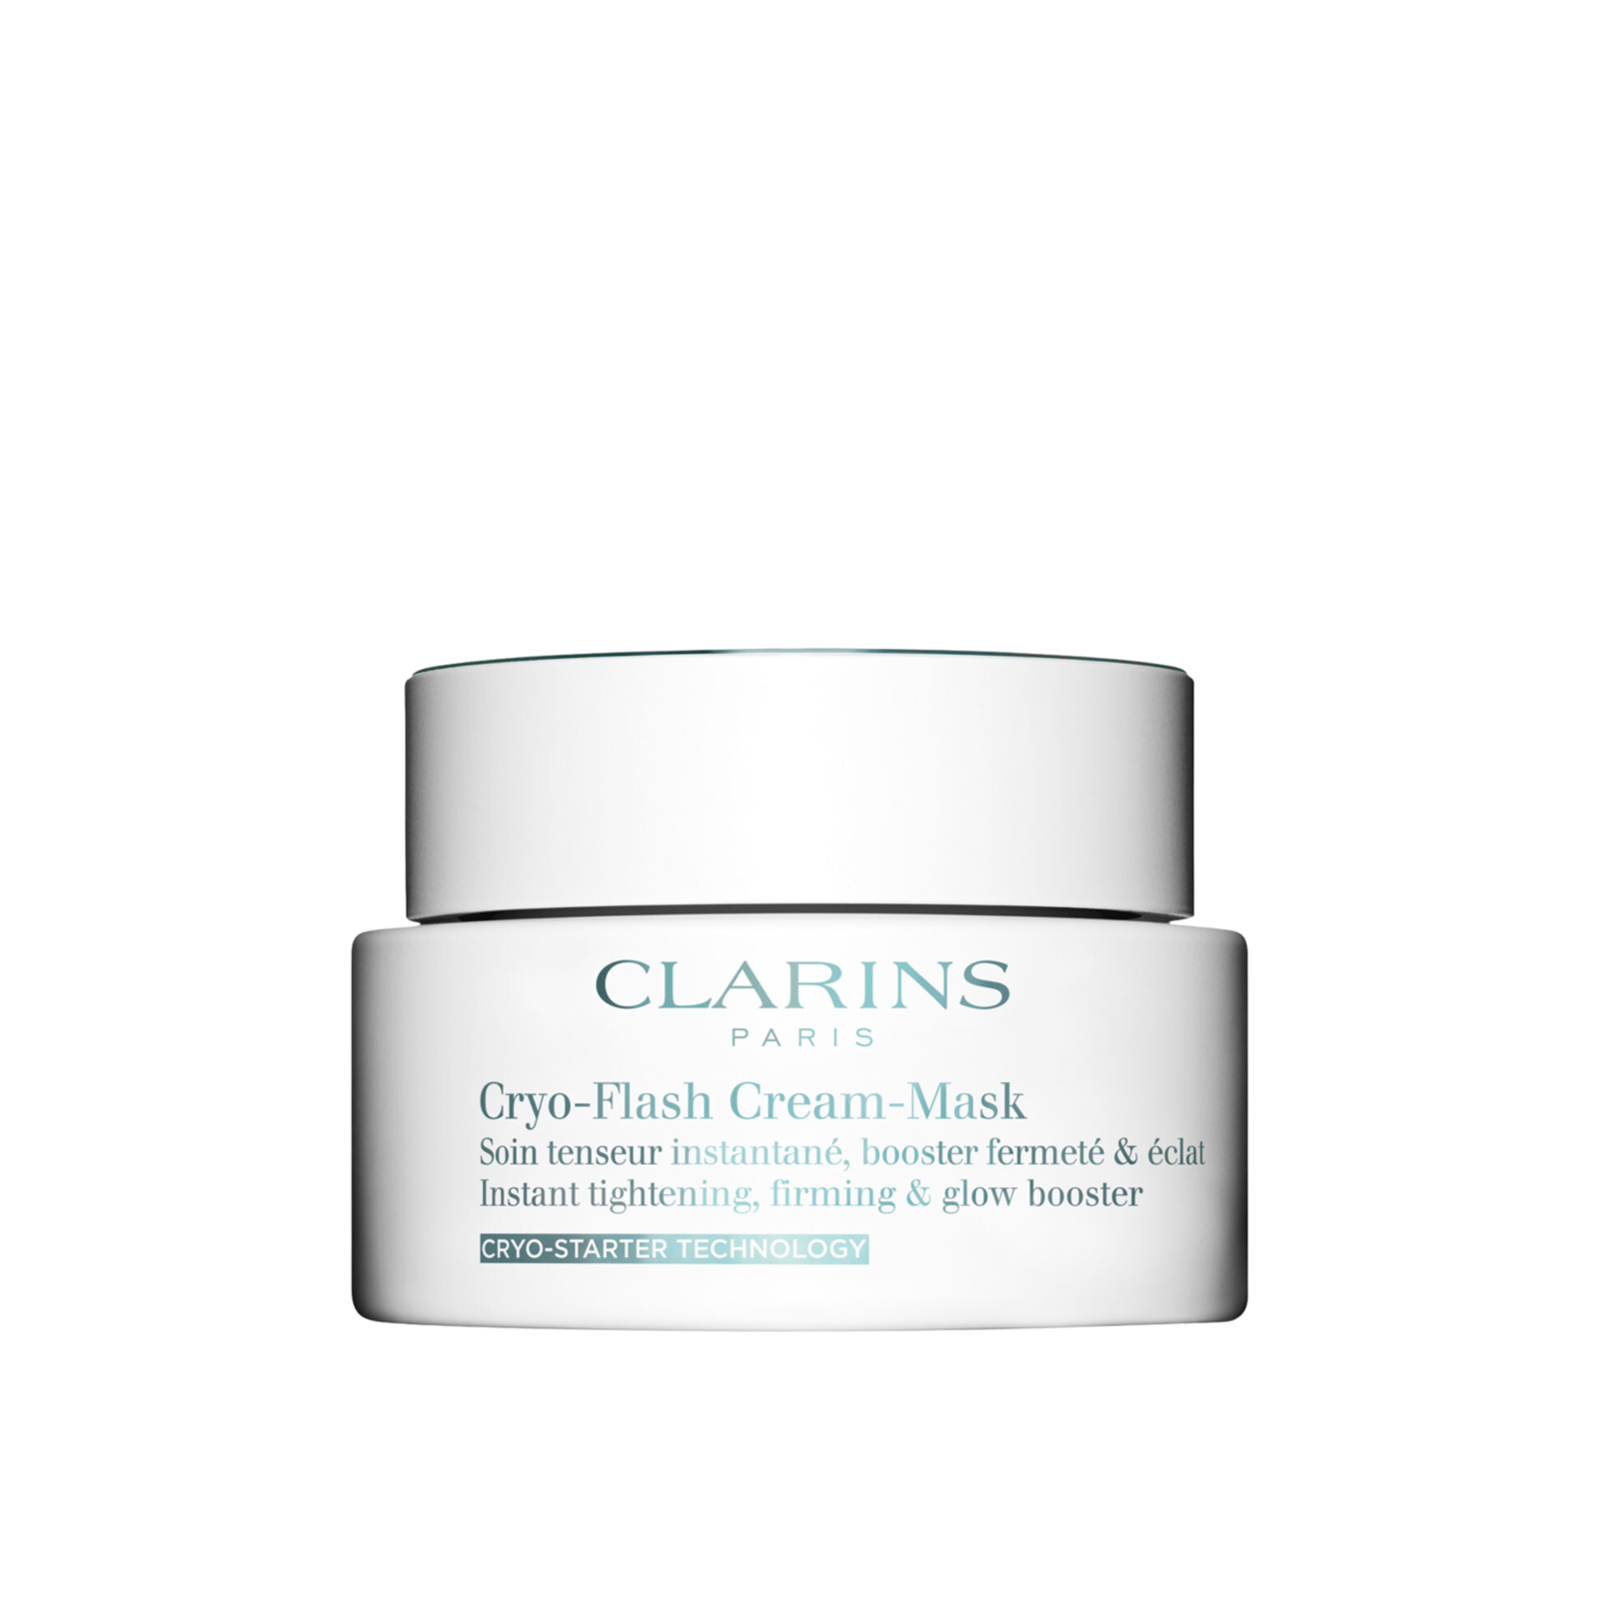 Clarins Cryo-Flash Cream-Mask 75ml (2.5 oz)